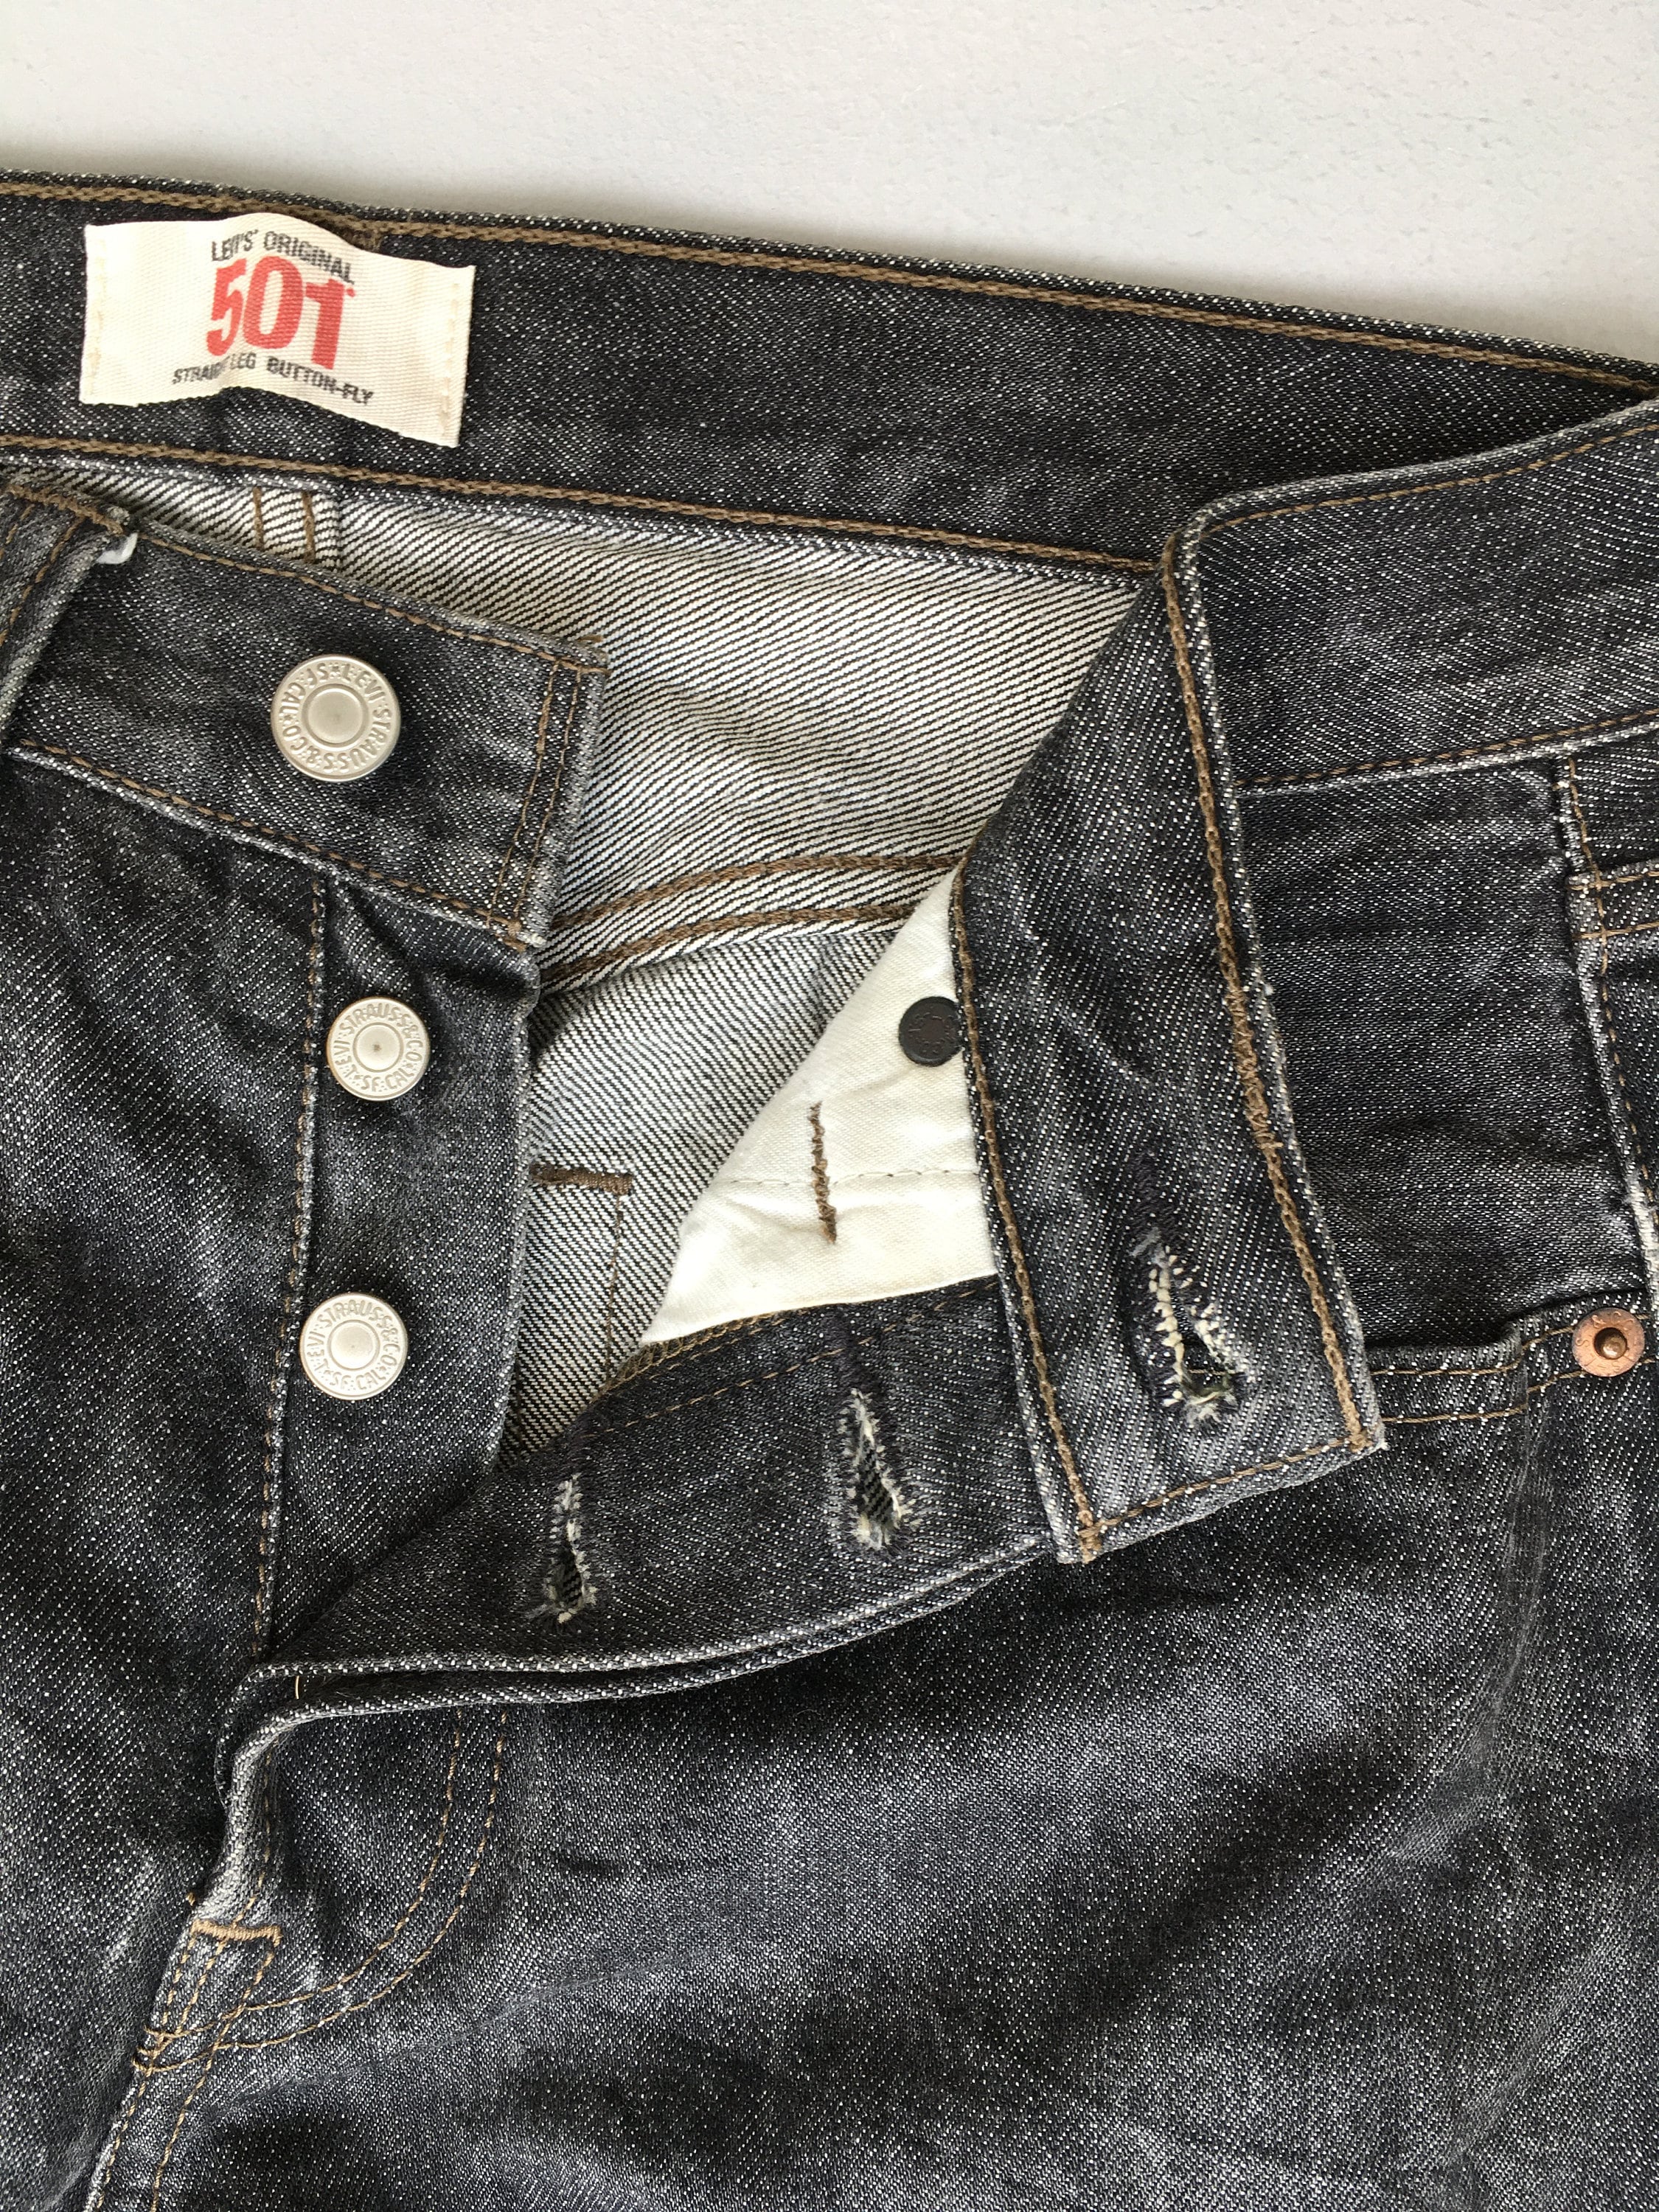 Size 27x29 Vintage Levis 501 Women's Black Jeans Levis | Etsy